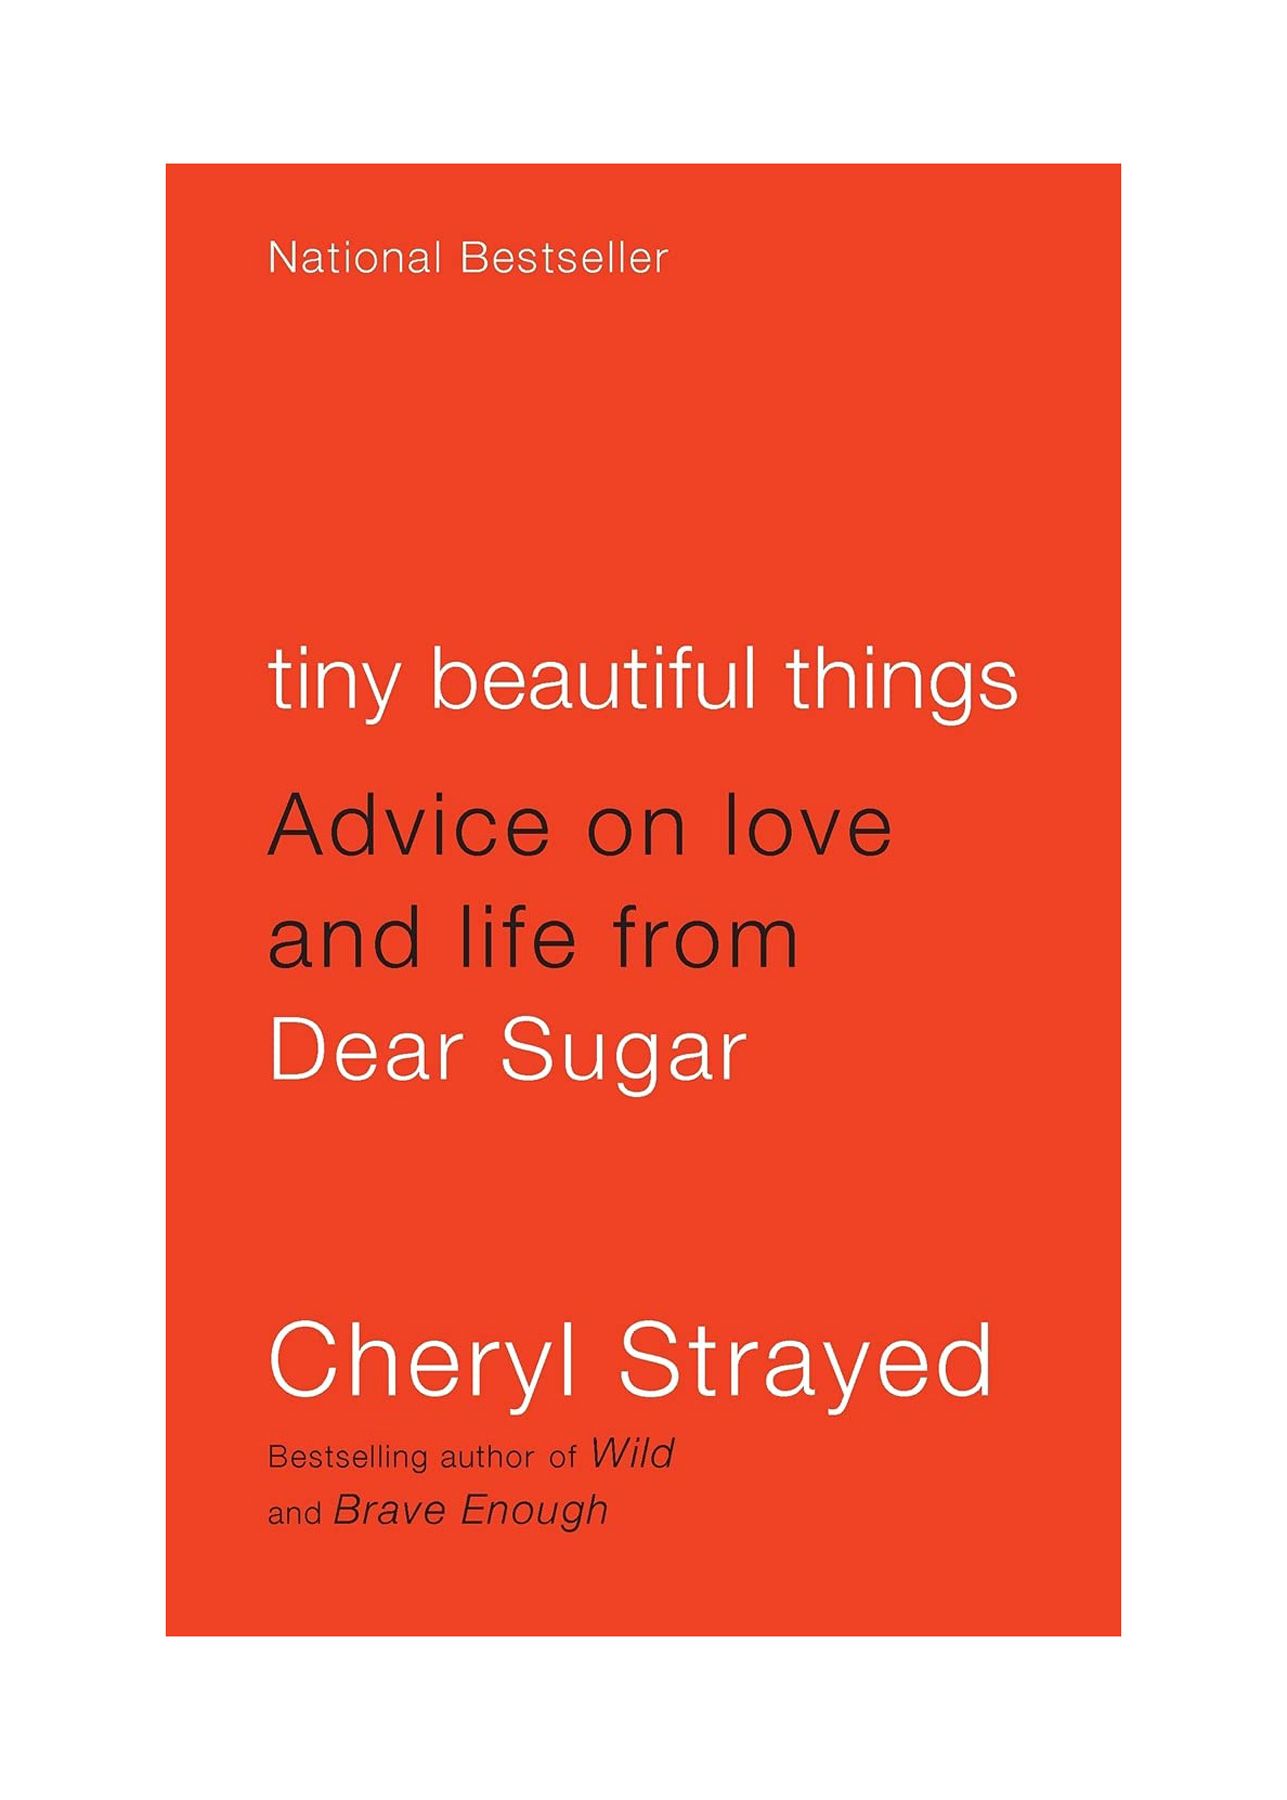 破局のための本：小さな美しいもの：シェリルストレイドによる親愛なる砂糖からの愛と人生に関するアドバイス